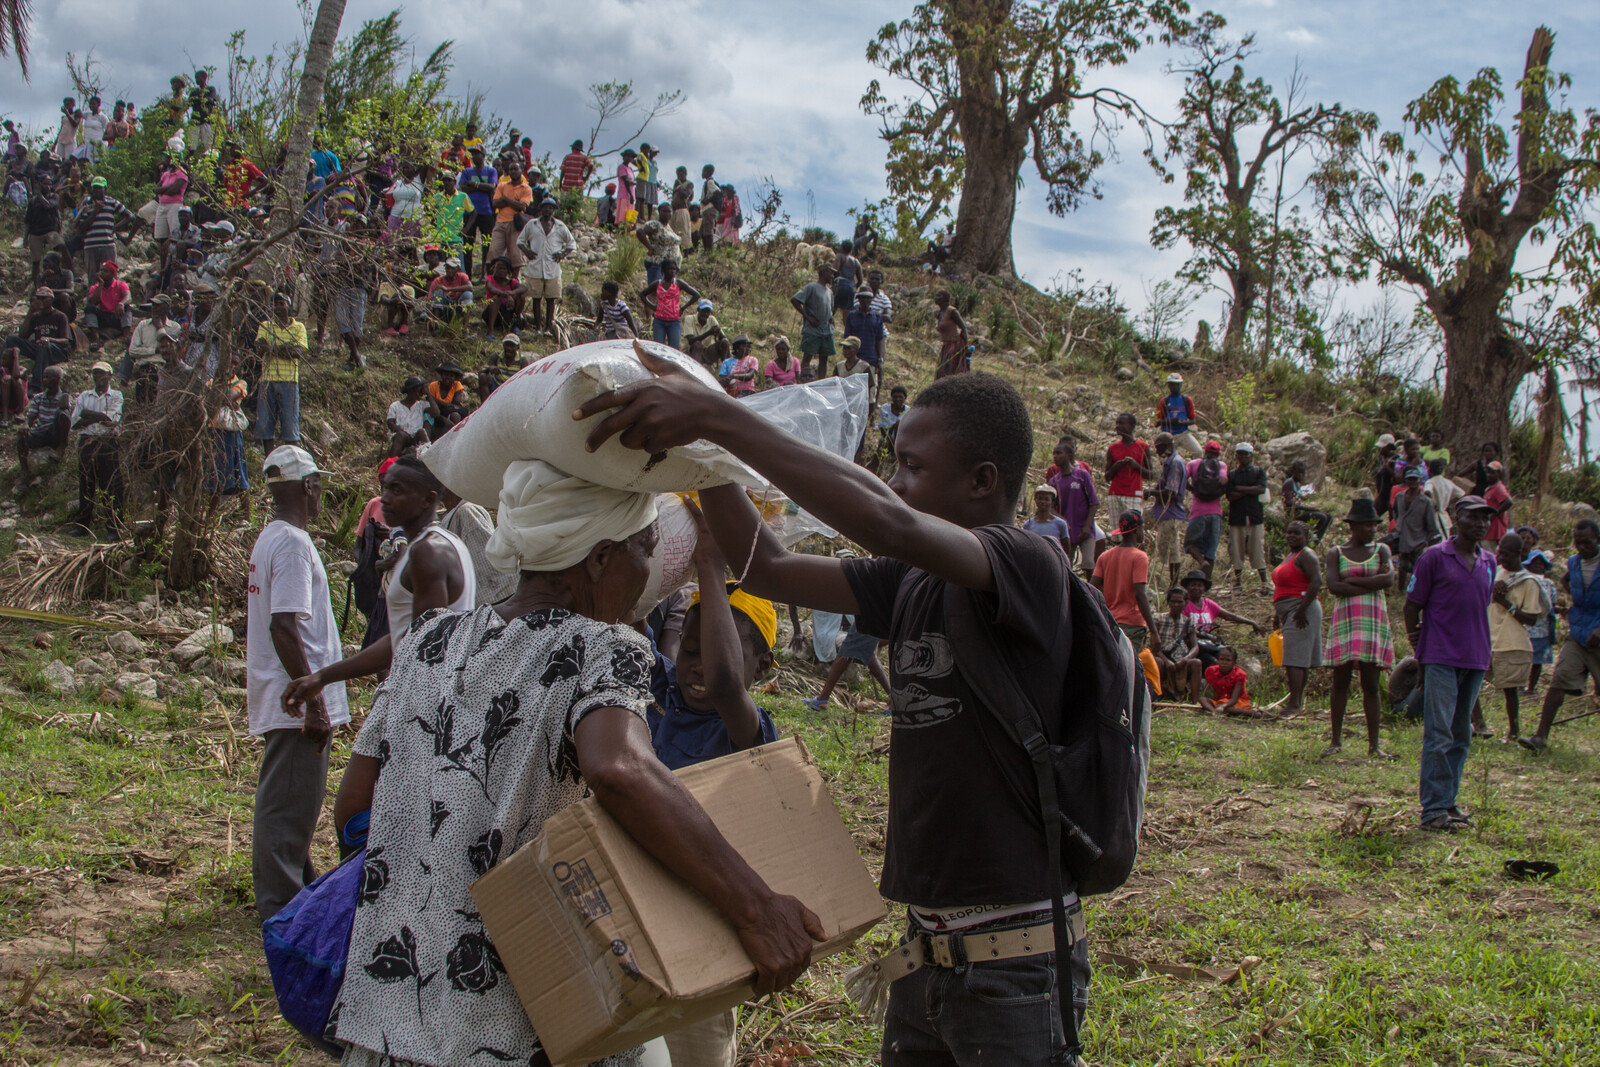 Hilfsgüter wie Nahrung werden auch in entlegenen Gebieten so schnell wie möglich verteilt, damit keine Hungersnot ausbricht.